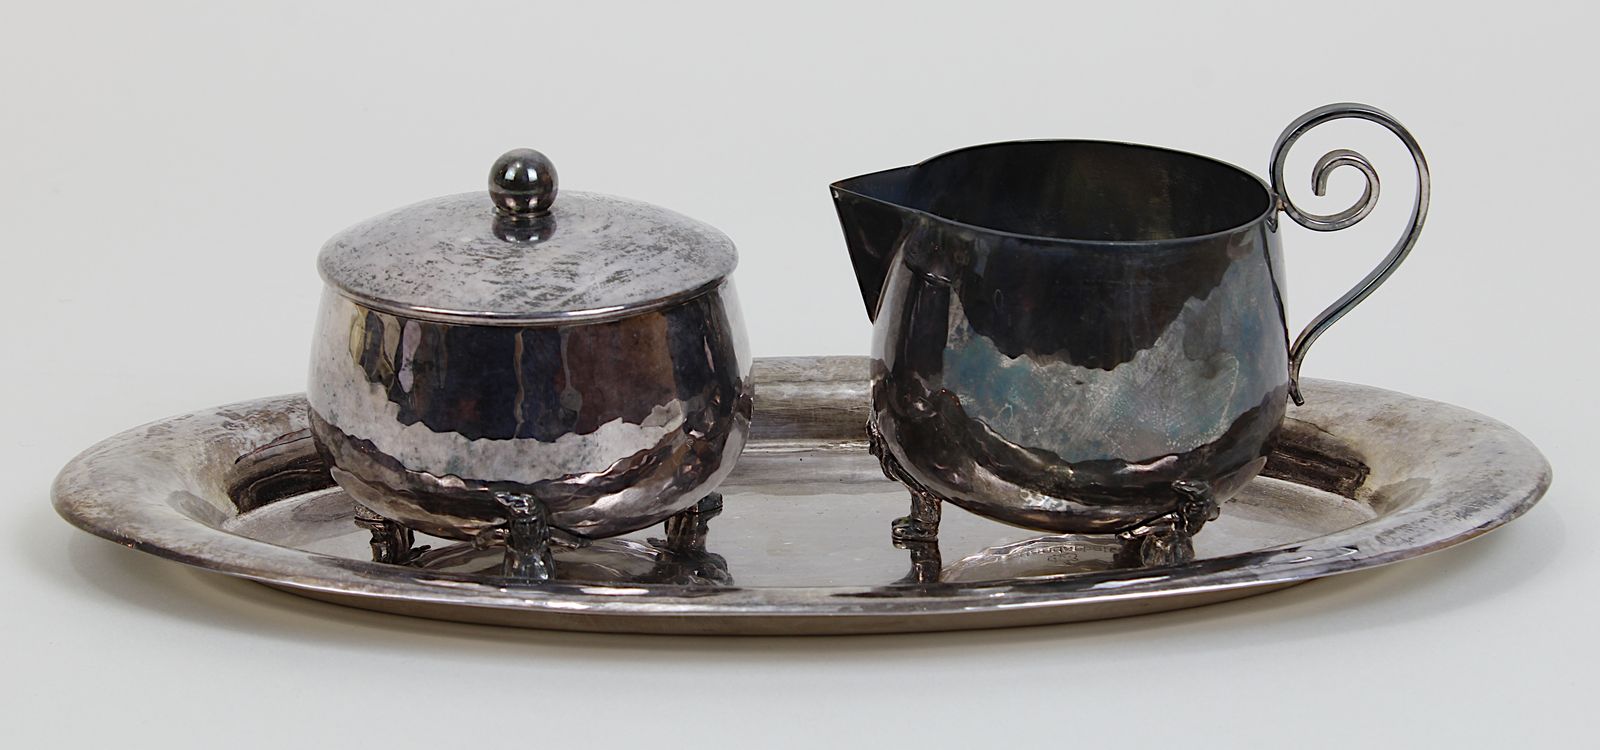 Milch - u. Zuckergarnitur, 1. H. 20. Jh., versilbert, Handarbeit, eine ovale Platte, L 26 cm, ein